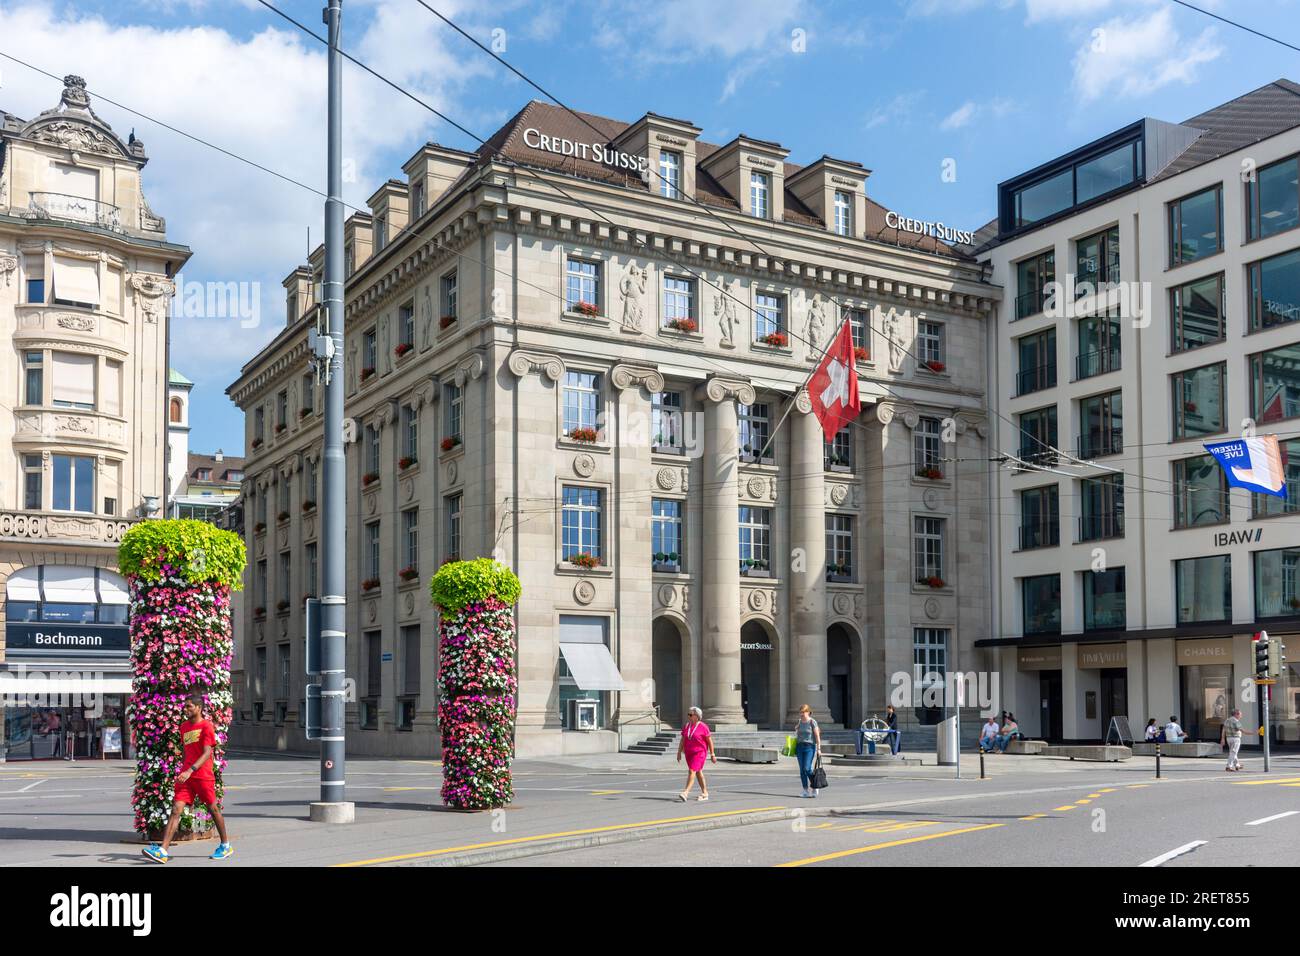 Credit Suisse AG building, Schwanenplatz, City of Lucerne (Luzern), Lucerne, Switzerland Stock Photo